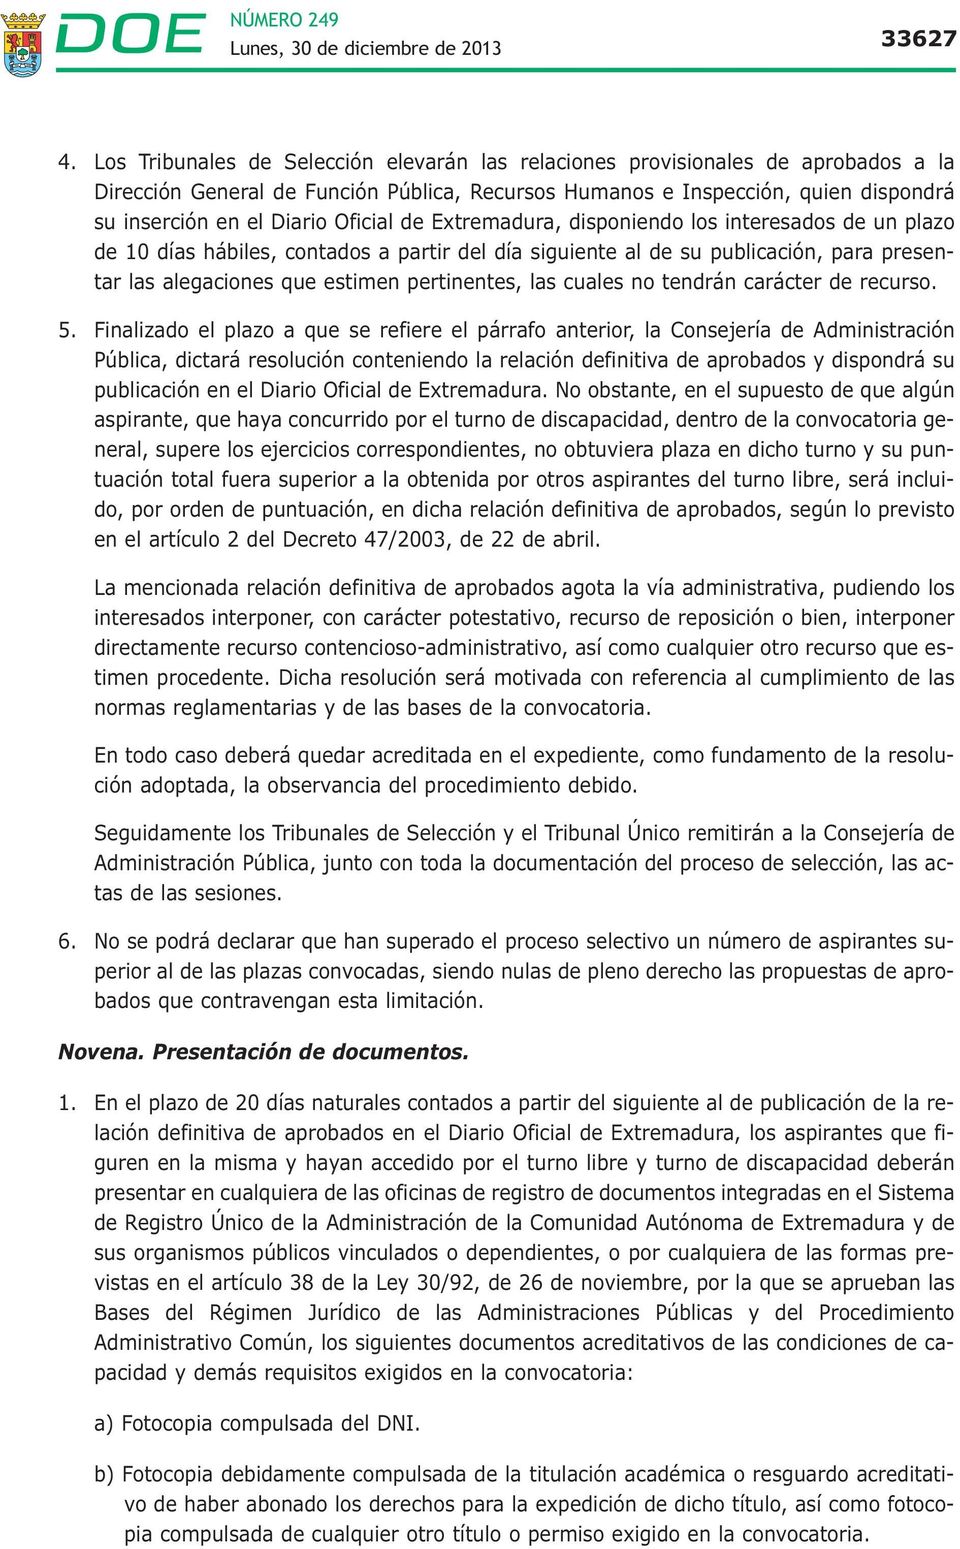 Oficial de Extremadura, disponiendo los interesados de un plazo de 10 días hábiles, contados a partir del día siguiente al de su publicación, para presentar las alegaciones que estimen pertinentes,